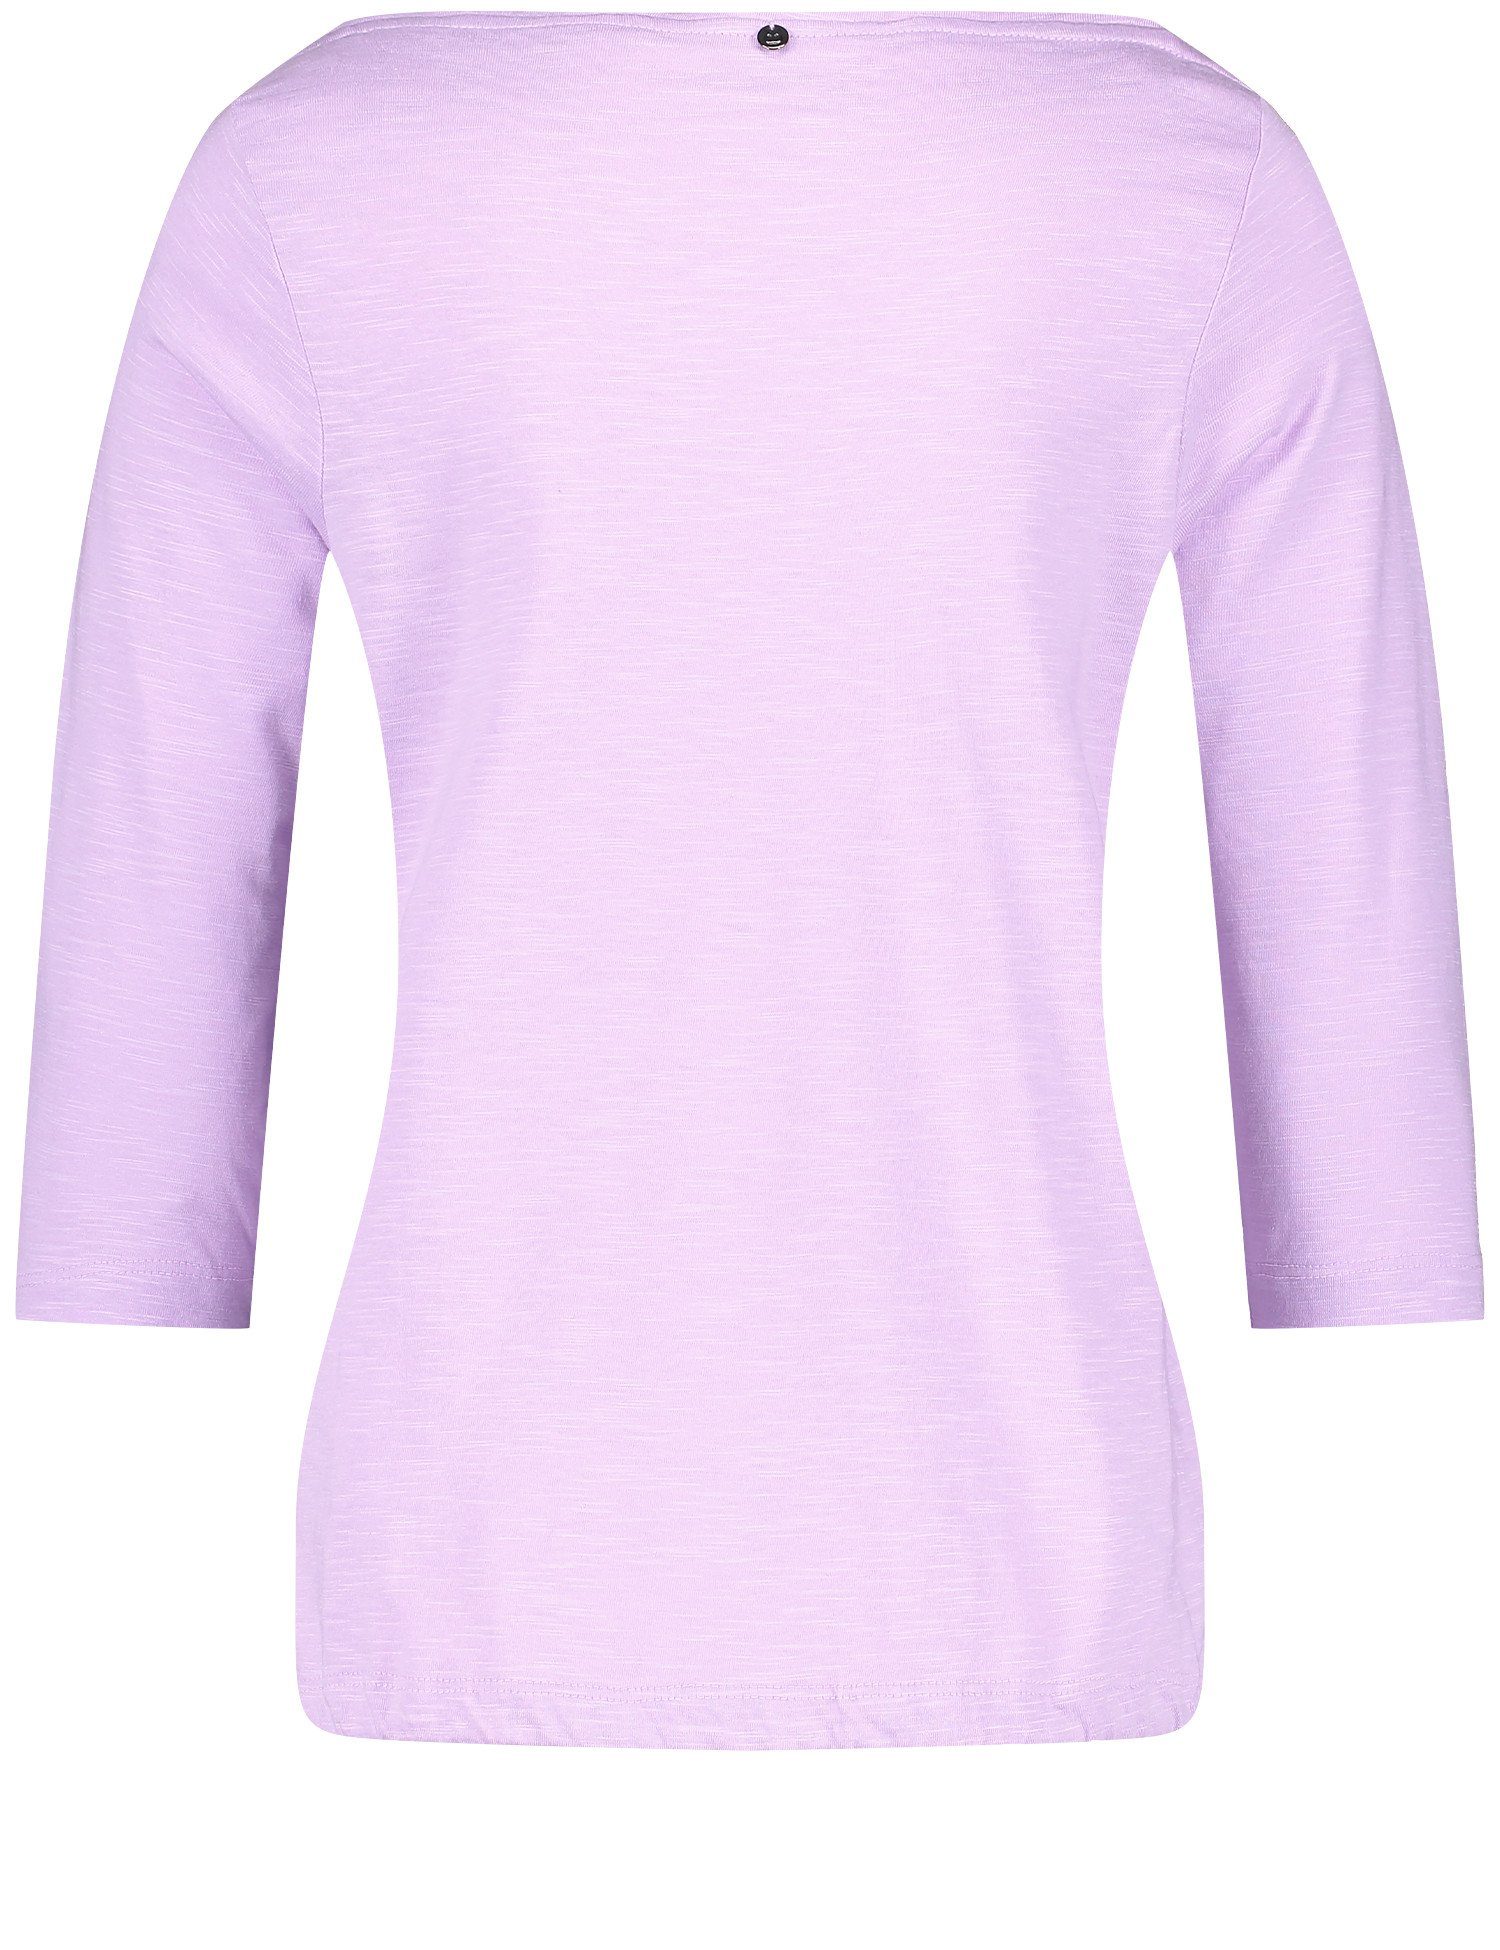 GERRY WEBER 3/4-Arm-Shirt Lilac mit 3/4 U-Bootausschnitt Arm Shirt